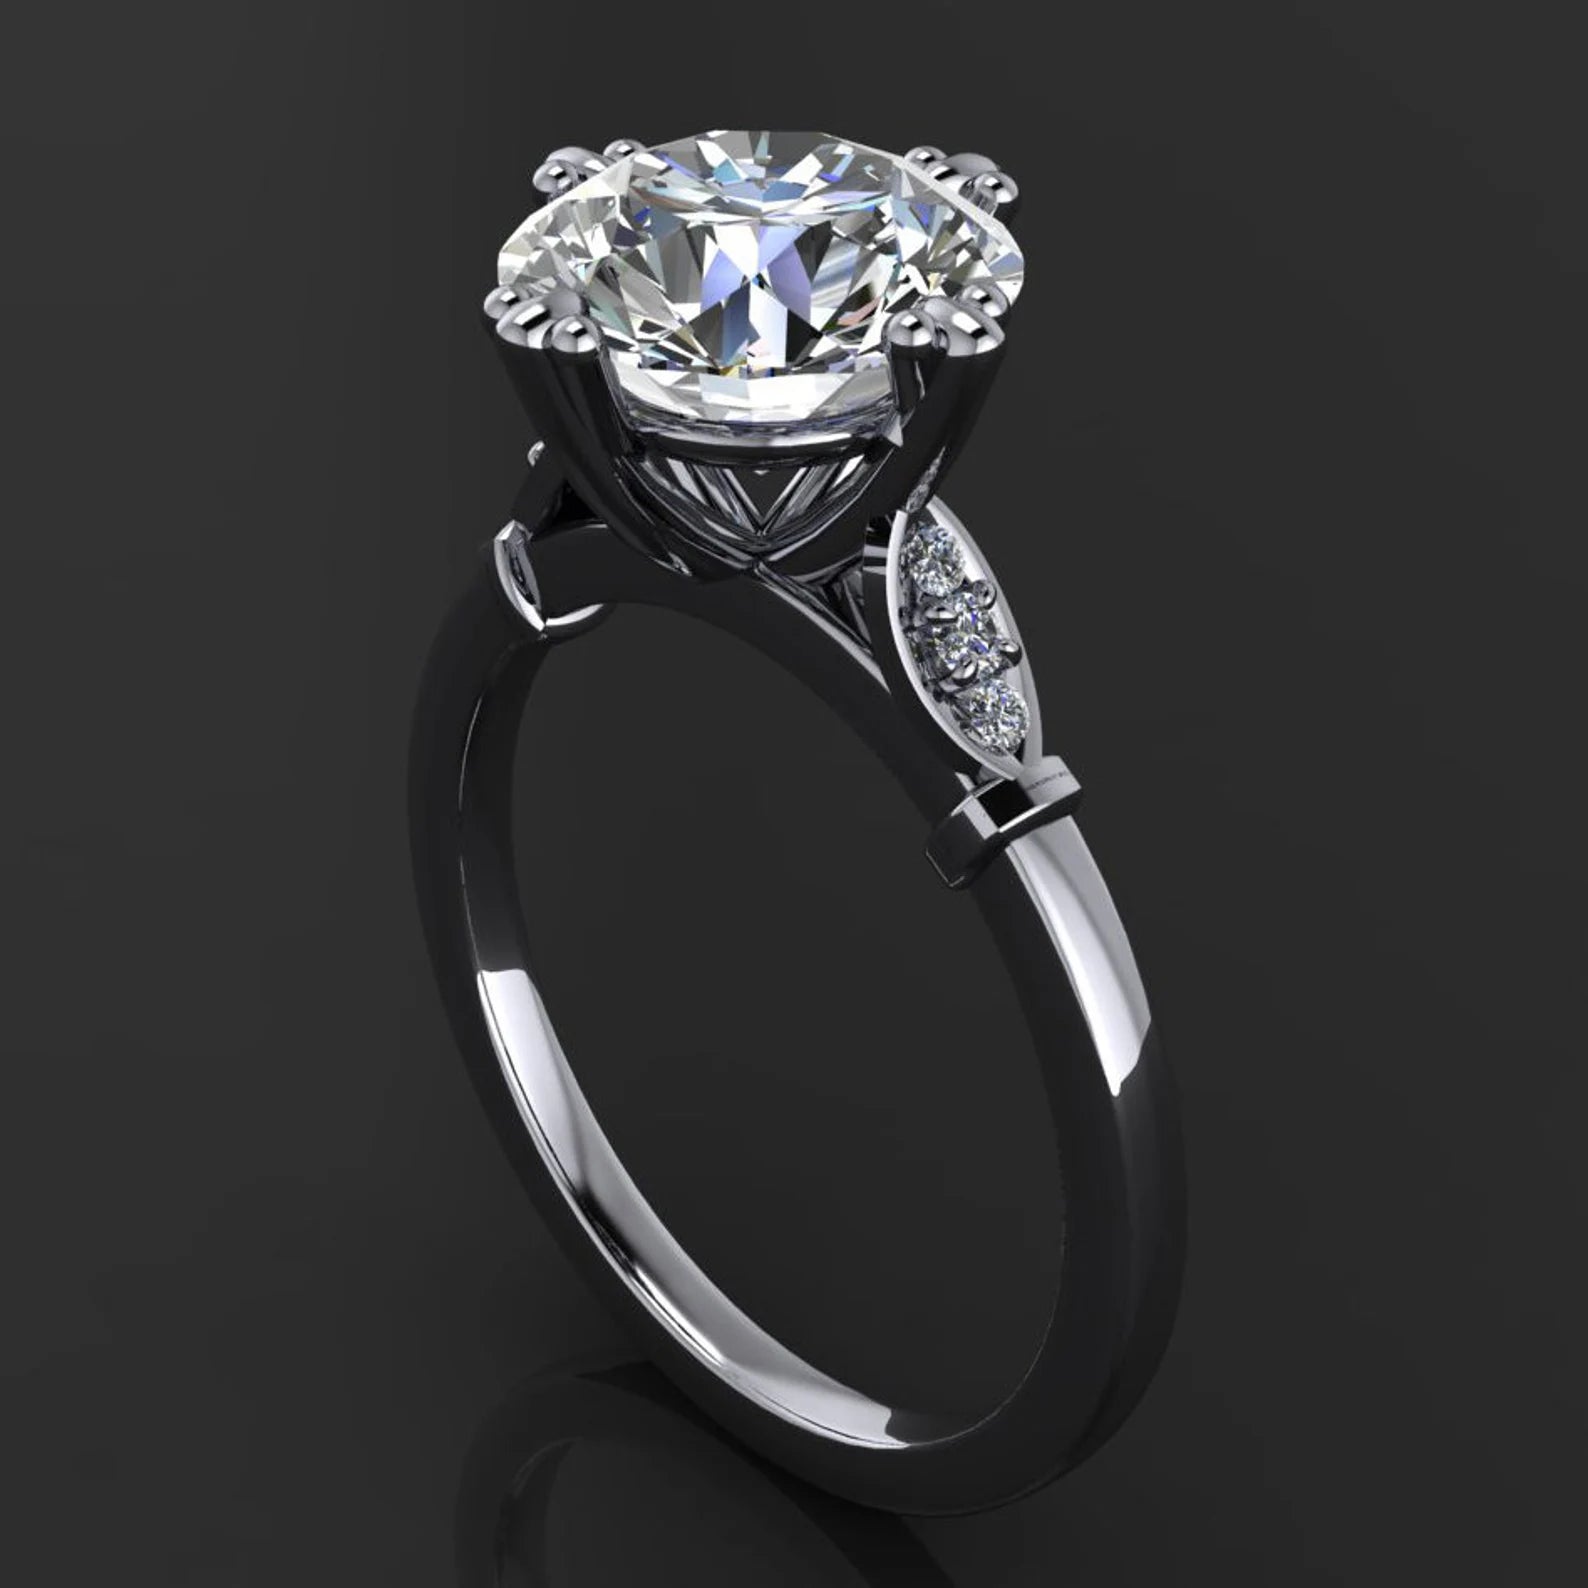 celia ring - 3 carat Old European cut moissanite engagement ring, ZAYA moissanite - J Hollywood Designs